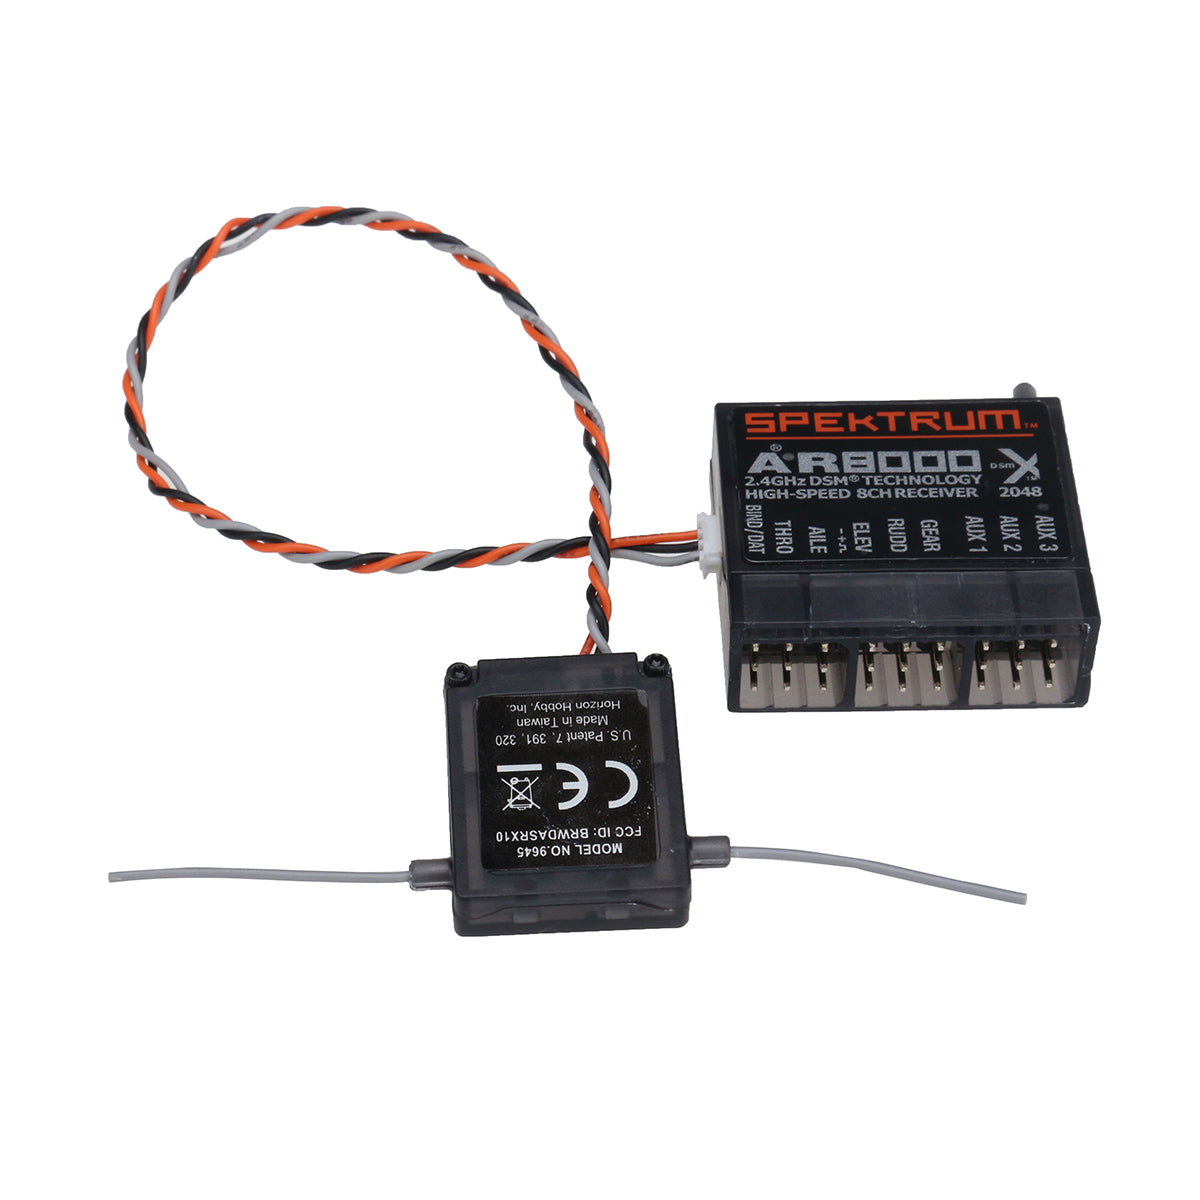 AR8000 2.4GHz DSMX 8 Channel Receiver Support For Spektrum Transmitter DX7s DX8 DX9 - Auto GoShop